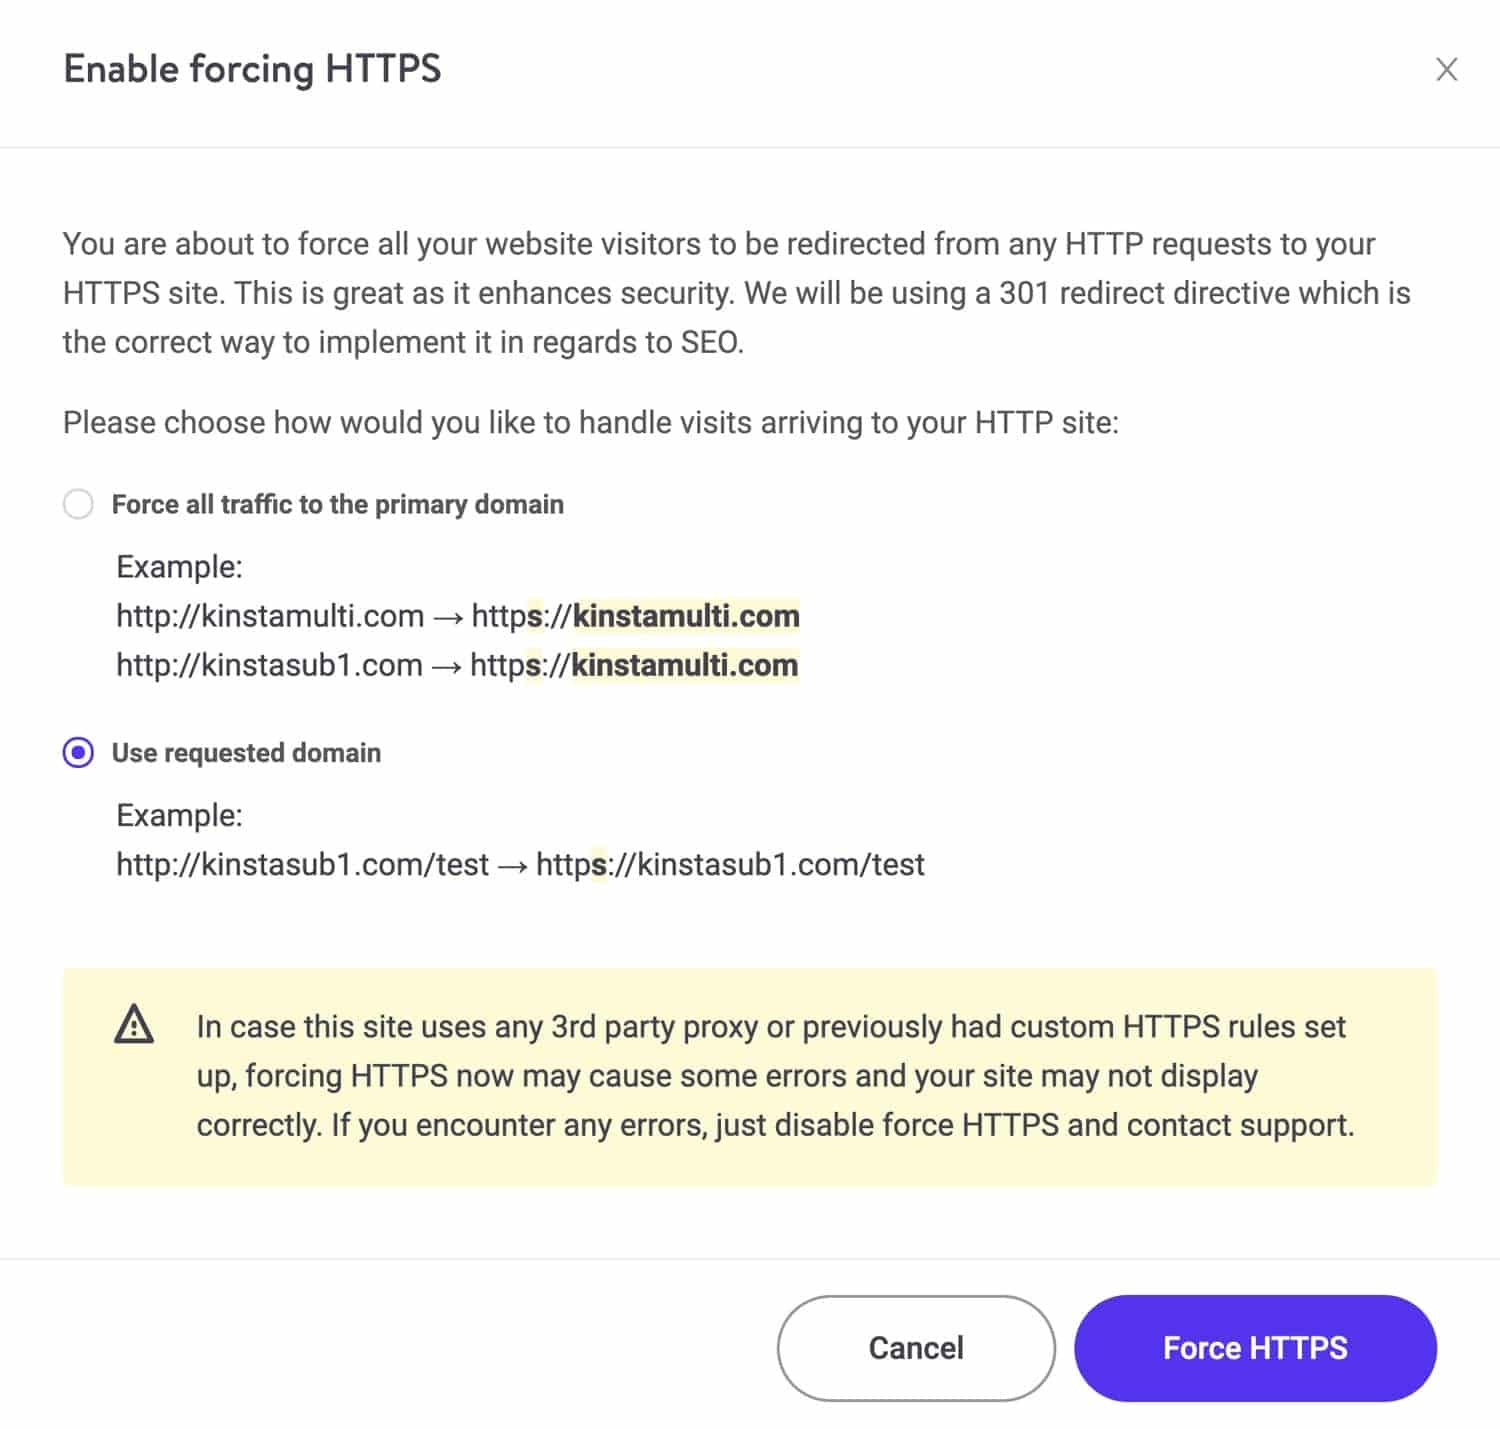 Habilitando a opção Forçar HTTPS com opção de uso do domínio solicitado no MyKinsta